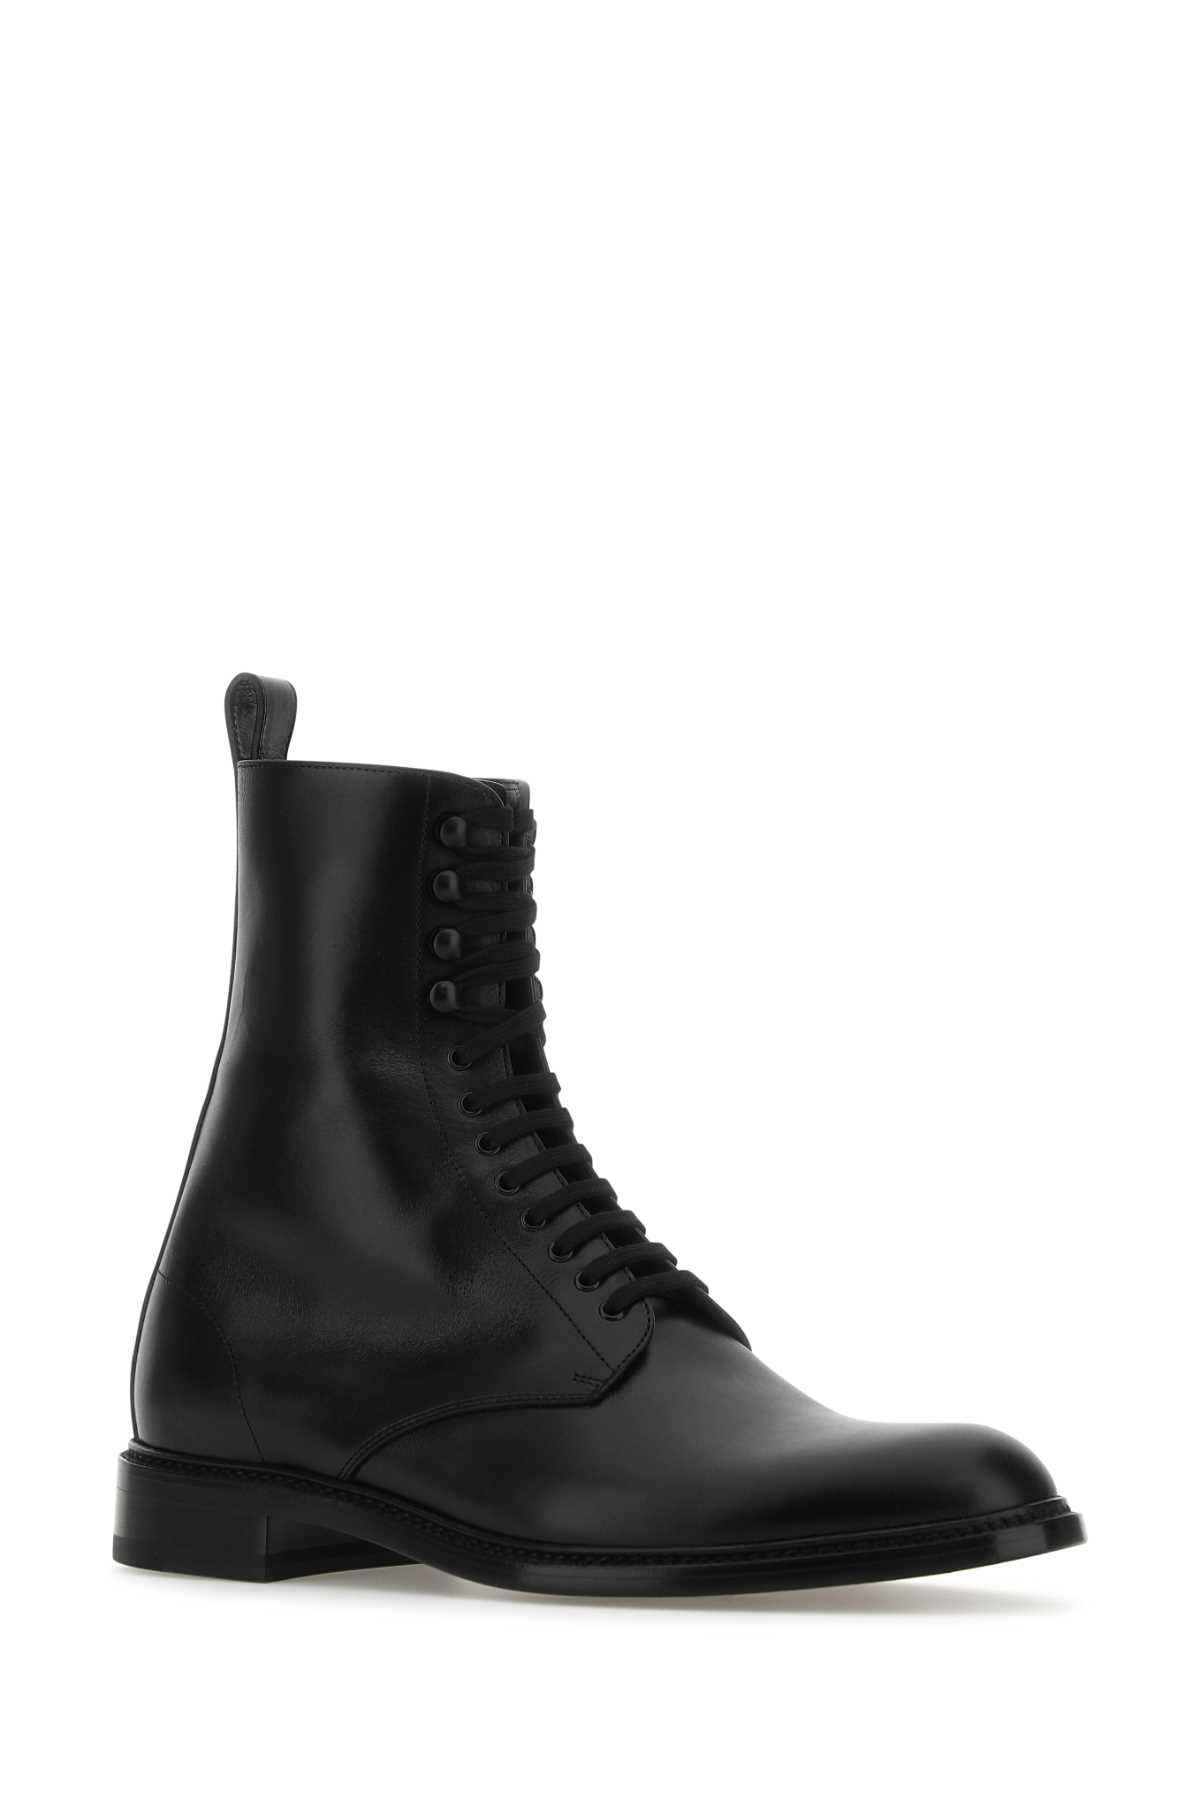 Shop Saint Laurent Black Leather Army Ankle Boots